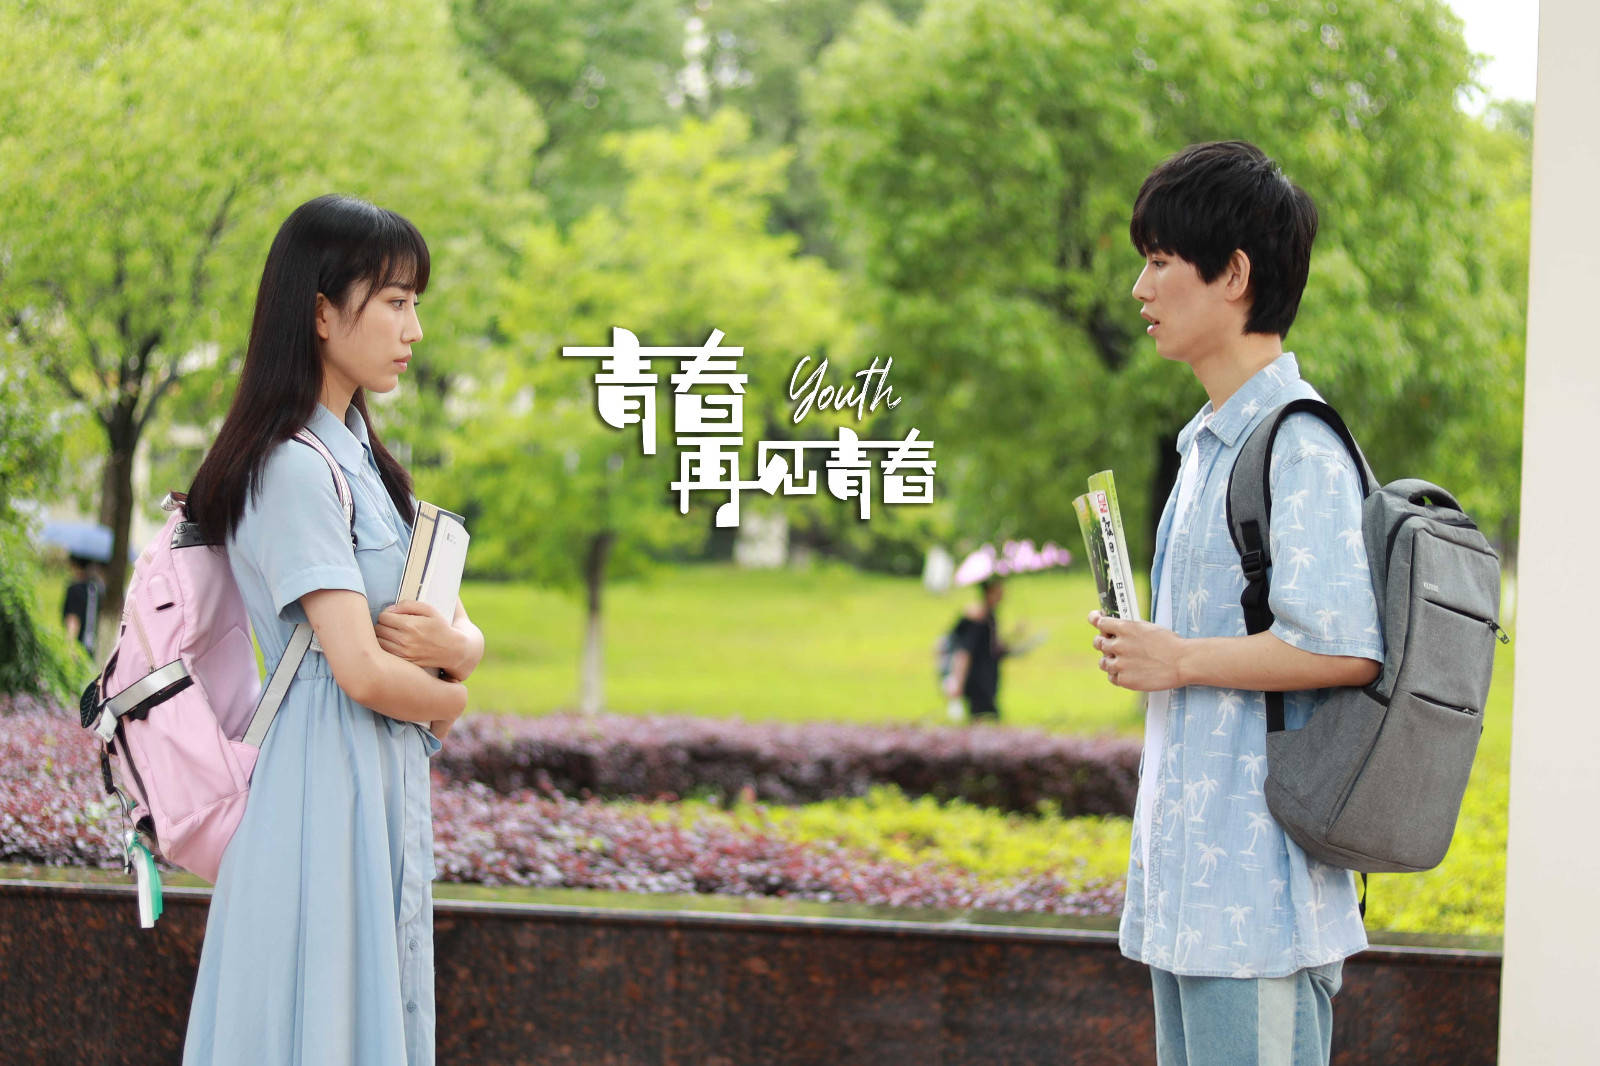 电影青春再见青春上映北京金桥影业用电影讲述简单而纯粹的校园故事